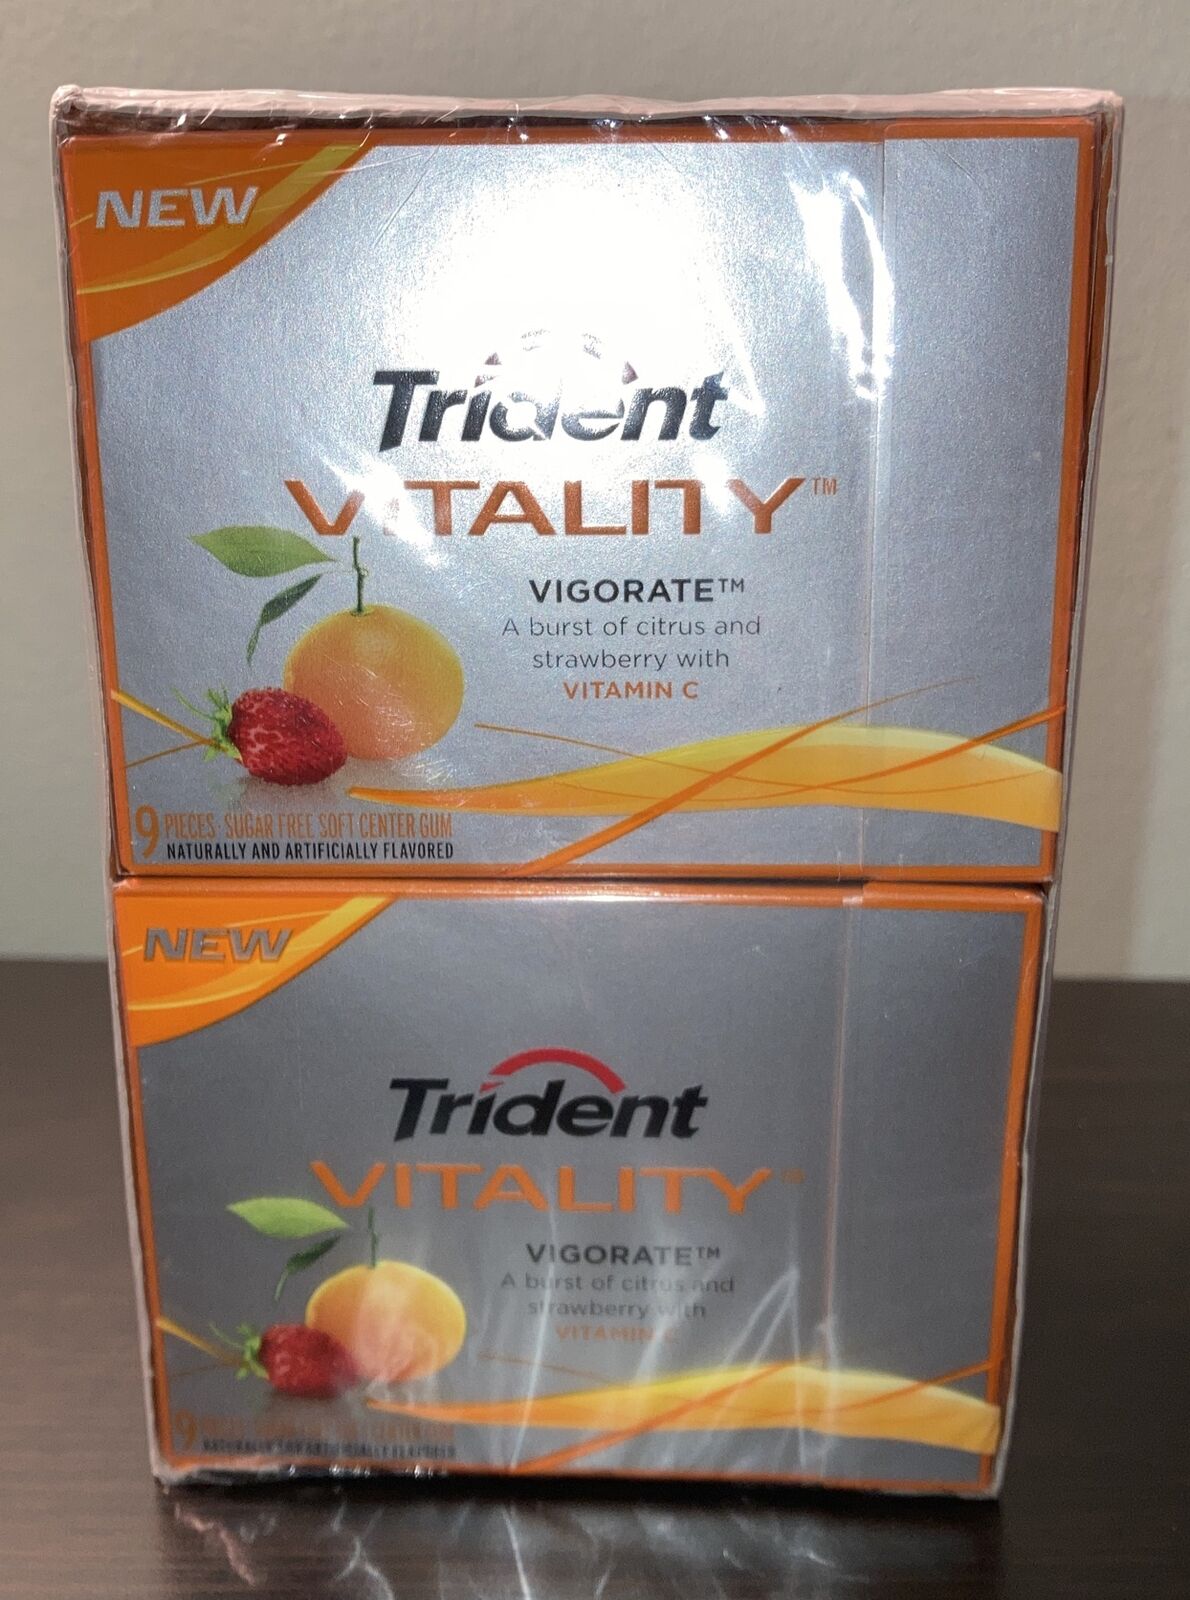 10 Packs Trident Vitality Vigorate Gum Chewing Citrus Strawberry Vitamin C New